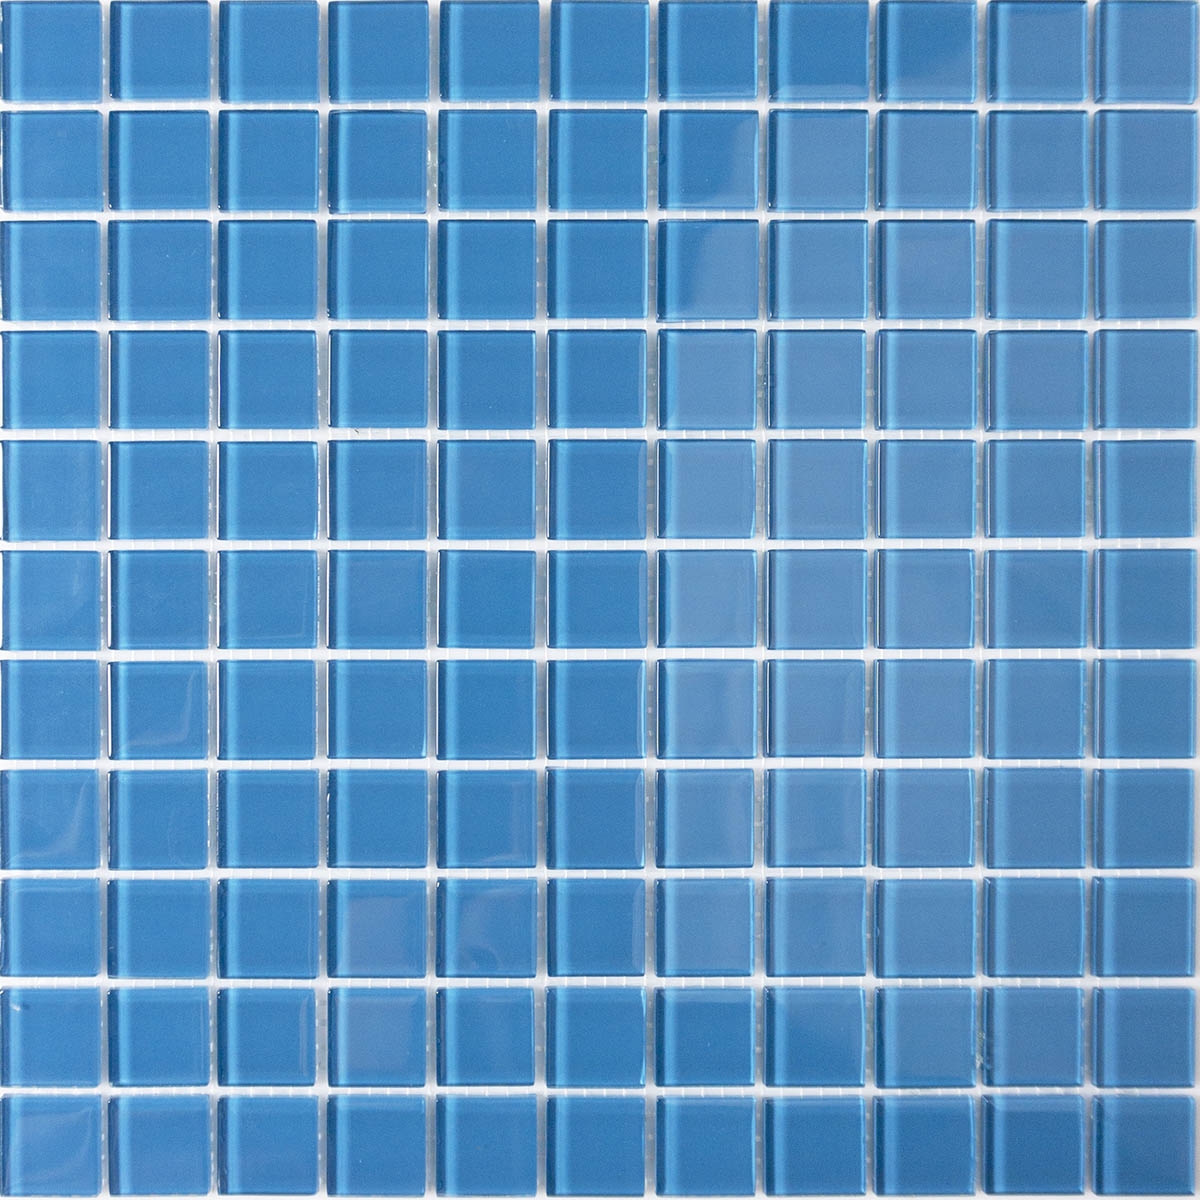 Мозаика GM 4047 C Cerulean m 30х30 000008698  color Синий